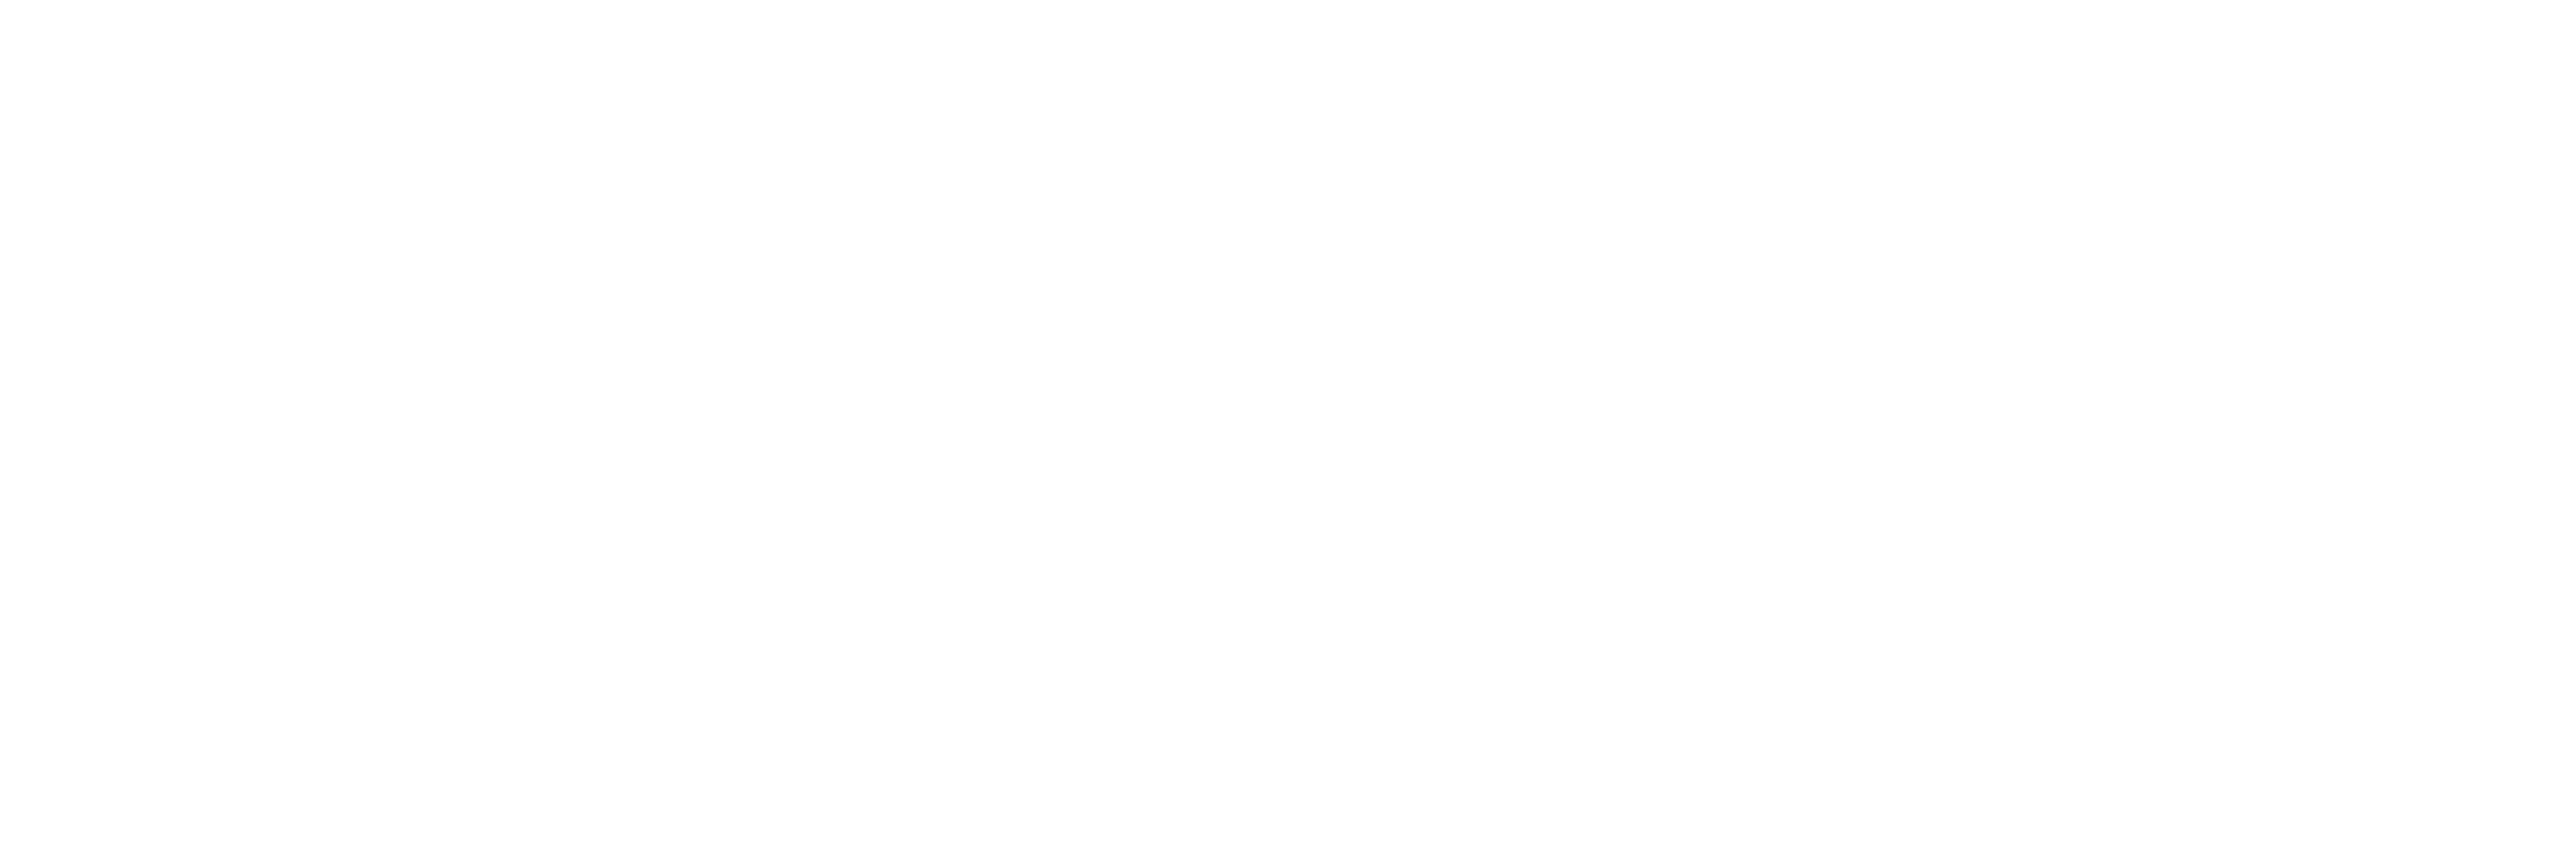 PetaPixel Logo